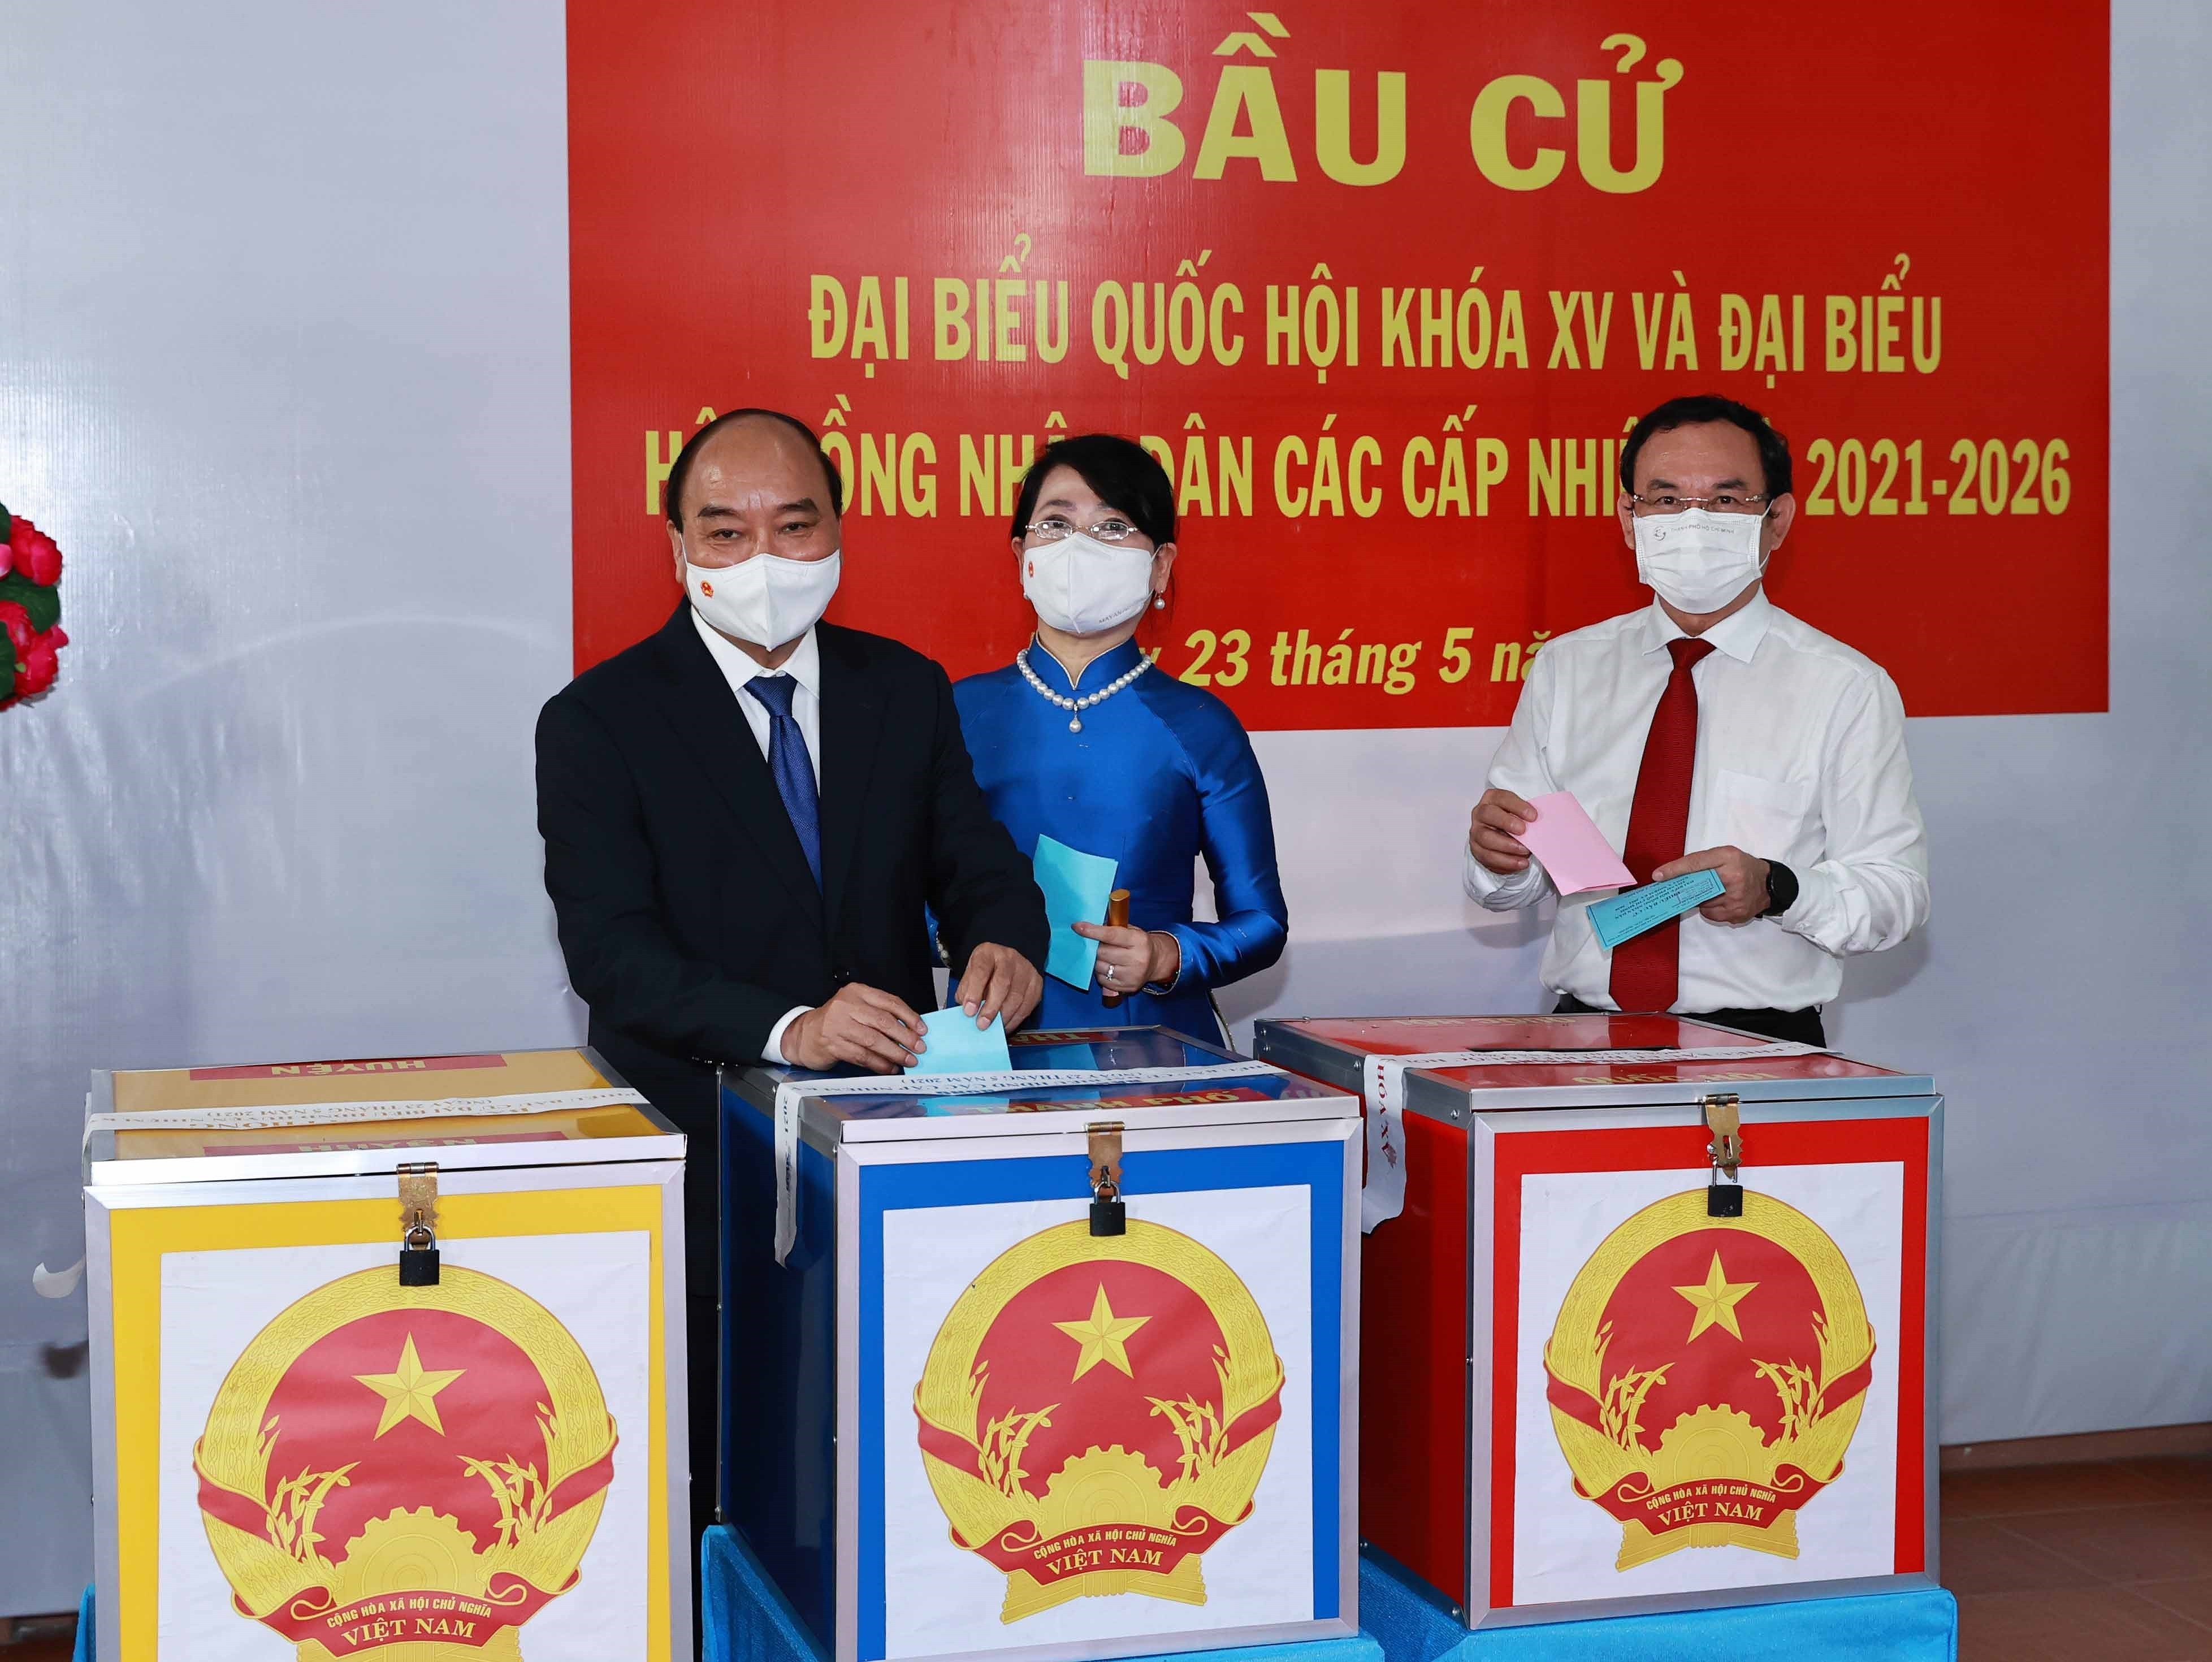 15es legislatives: le president Nguyen Xuan Phuc aux urnes a Ho Chi Minh-Ville hinh anh 1